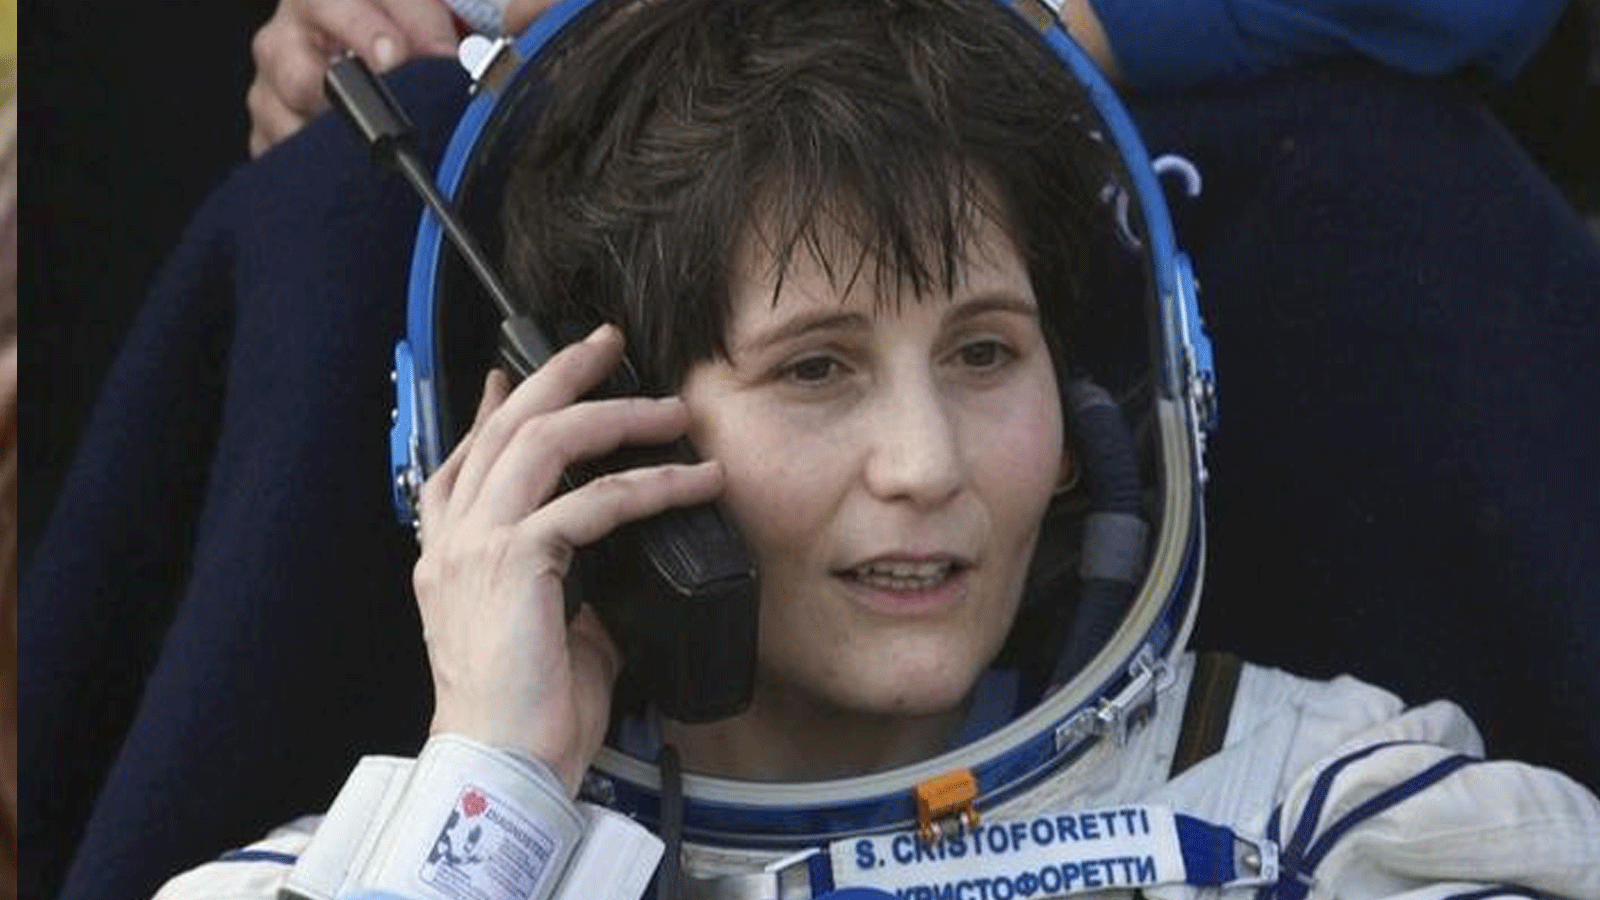 سامانتا كريستوفوريتي أول رائدة فضاء أوروبية تقود المحطة الدولية